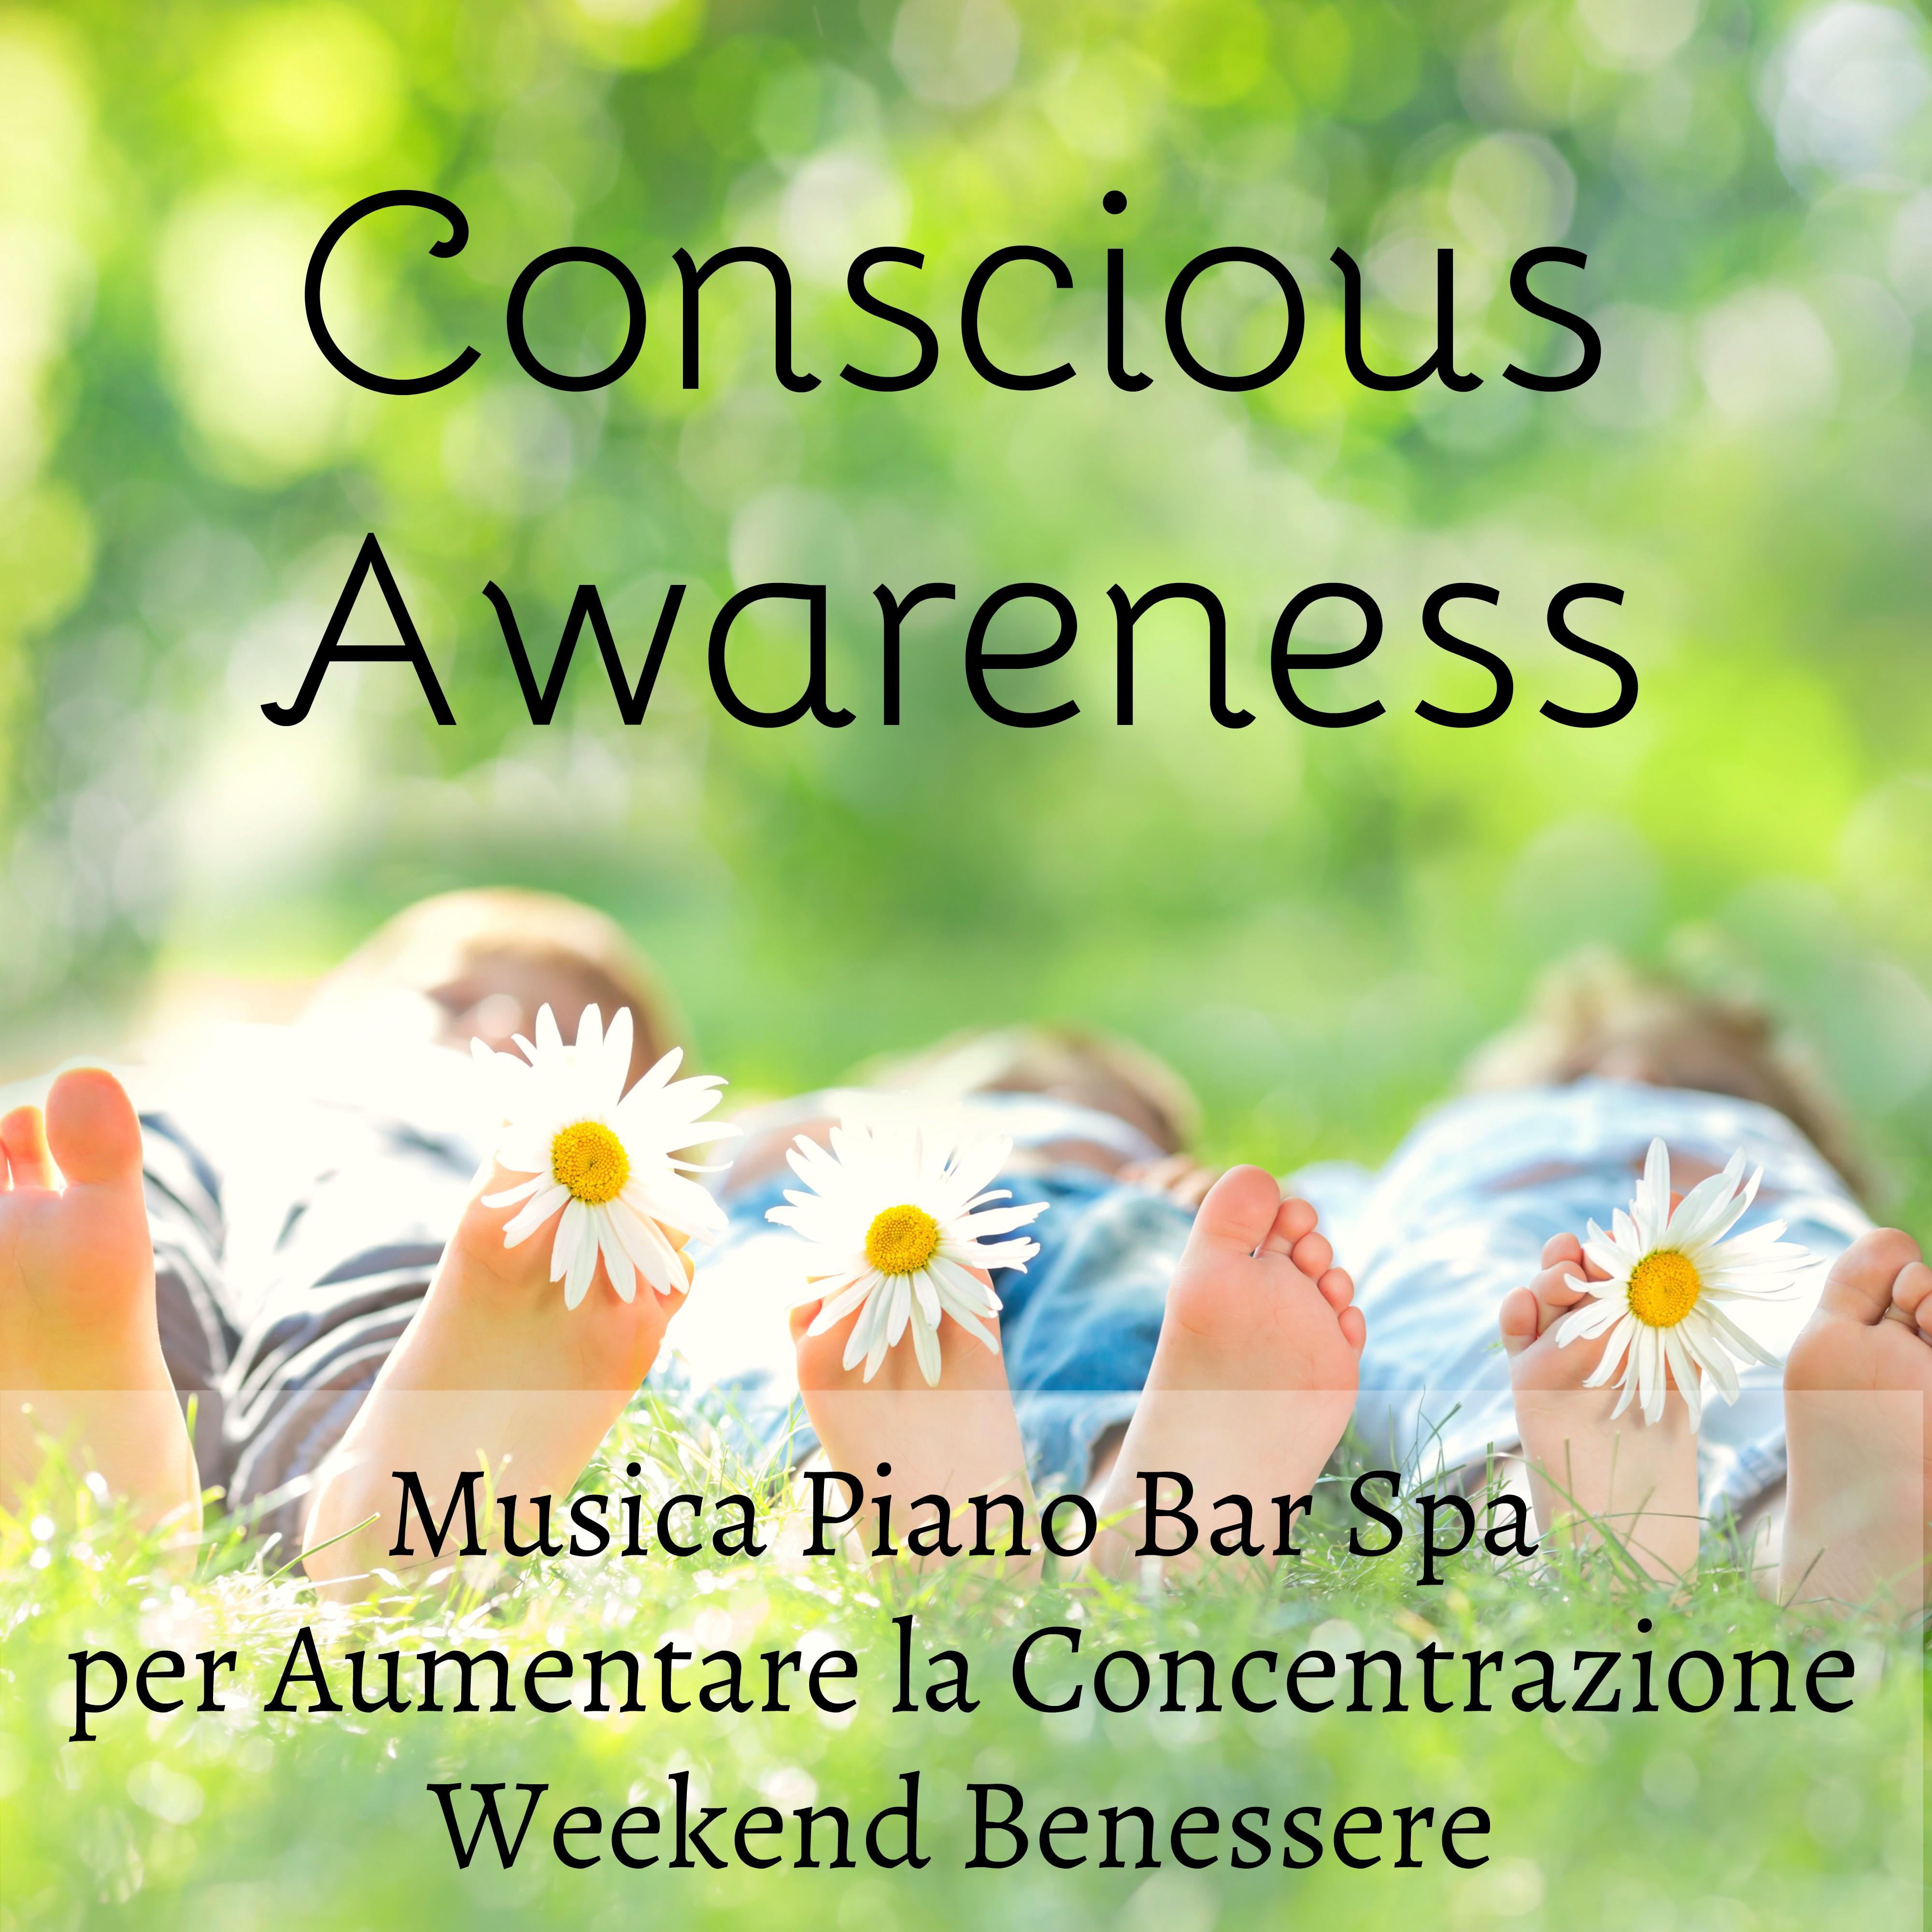 Conscious Awareness - Musica Piano Bar Spa per Studiare Aumentare la Concentrazione Weekend Benessere con Suoni Strumentali Spirituali Curativi